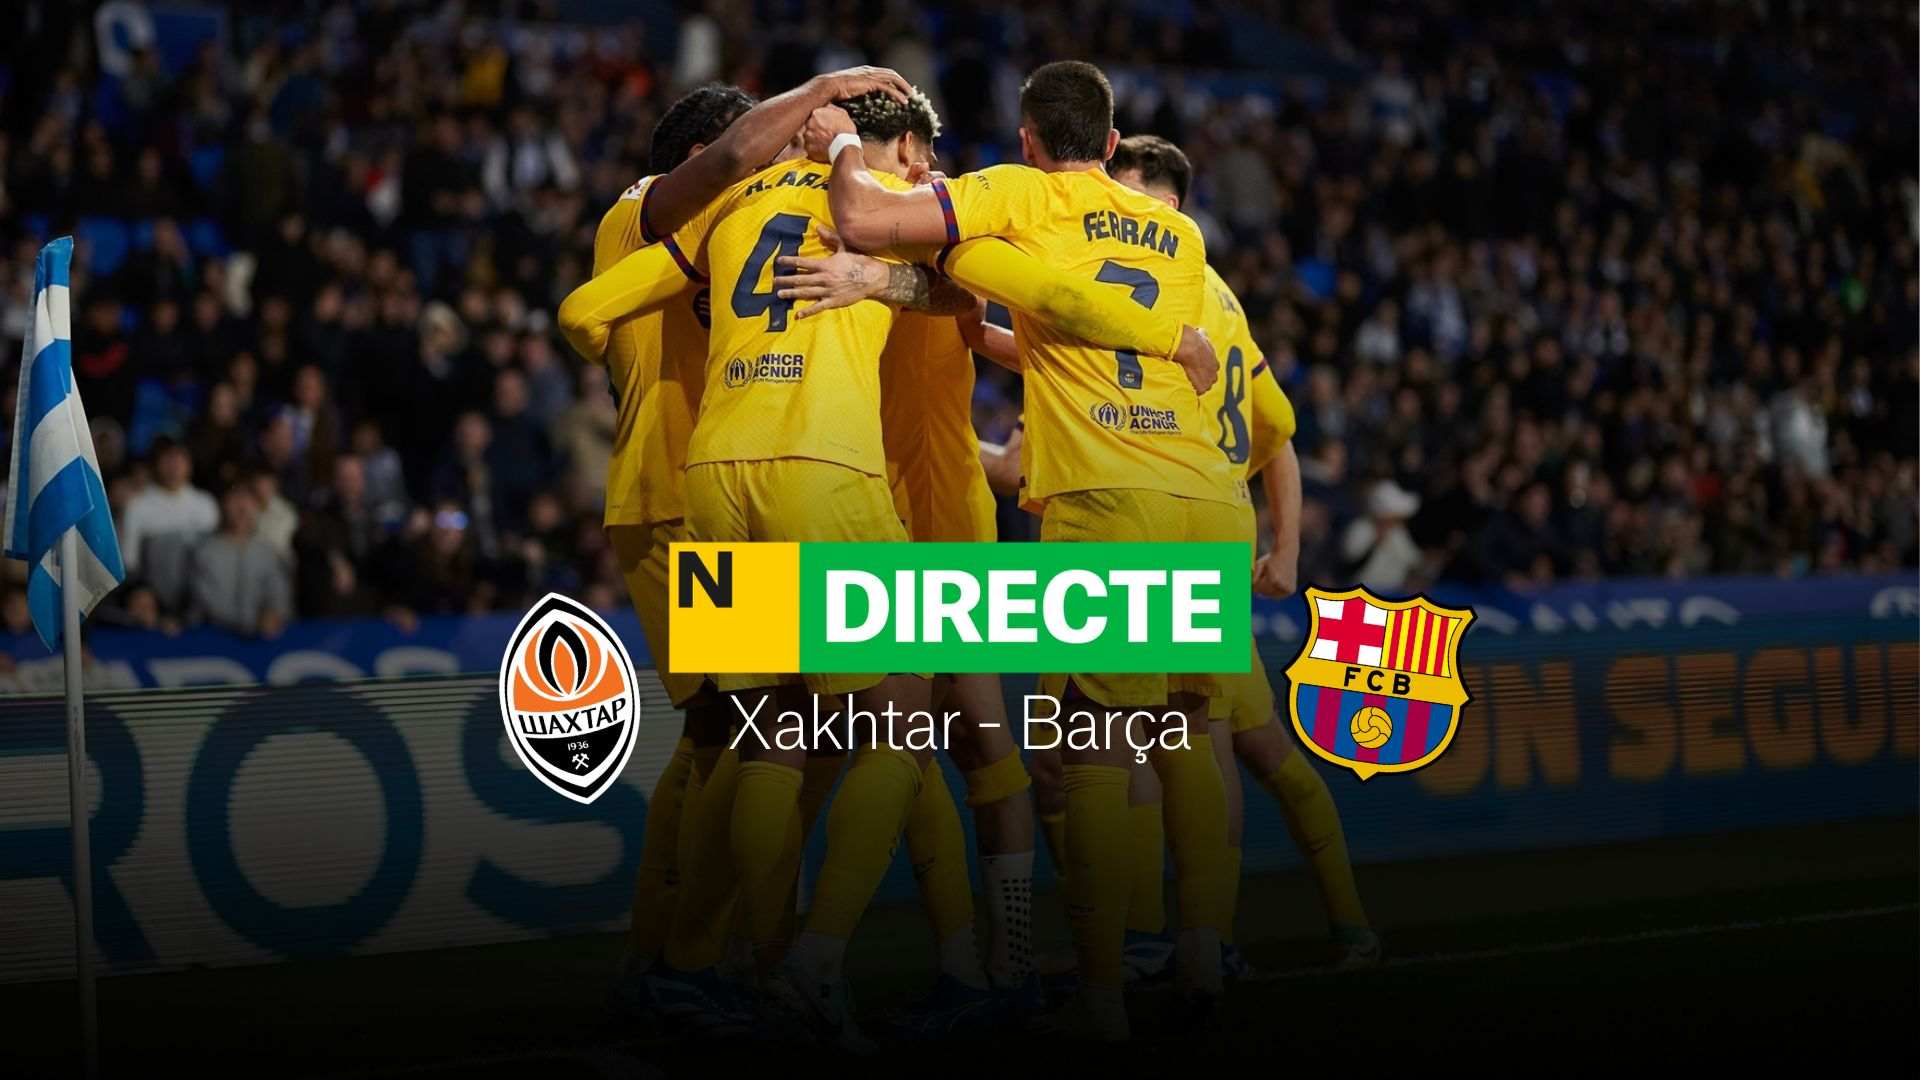 Xakhtar Donetsk - Barcelona de la Champions League, DIRECTO | Resultado, resumen y goles